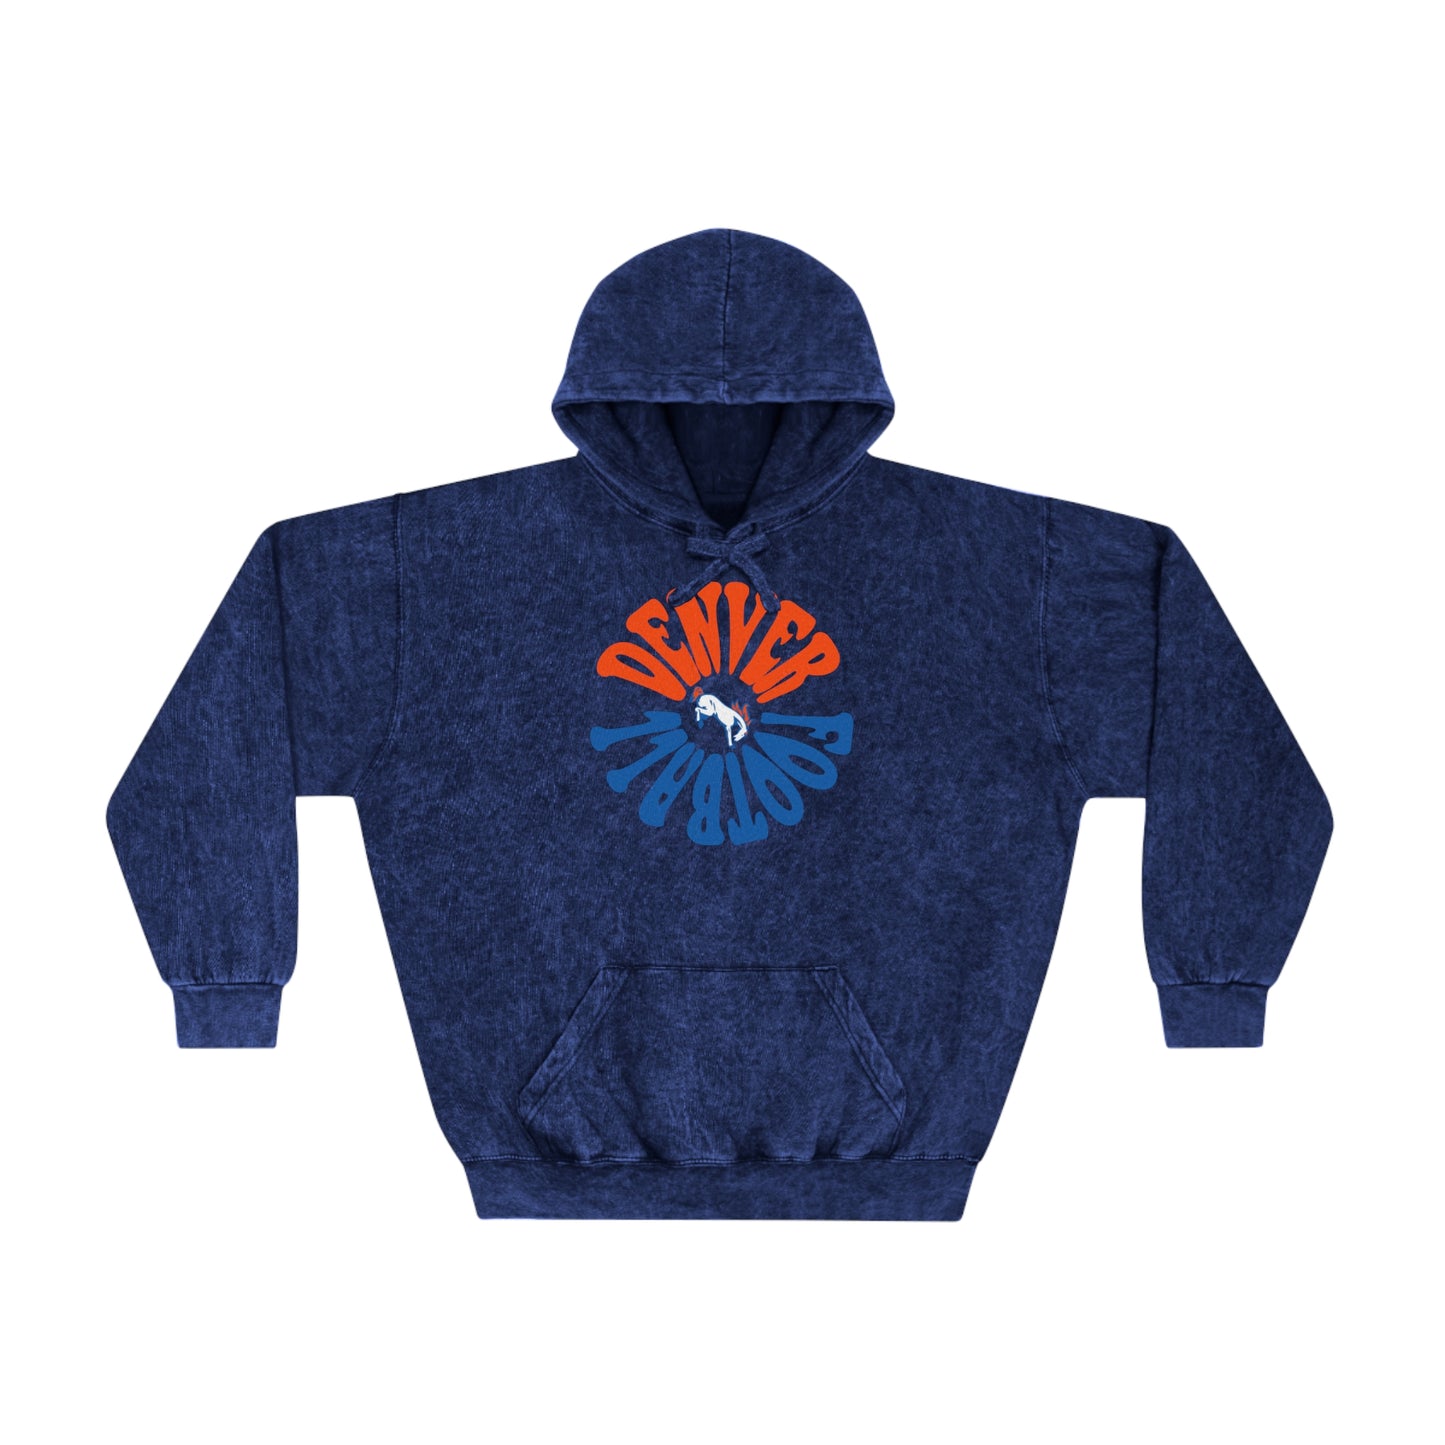 Mineral Wash Retro Denver Broncos Hoodie - Vintage Colorado Football Men's & Women's Sweatshirt - Design 2